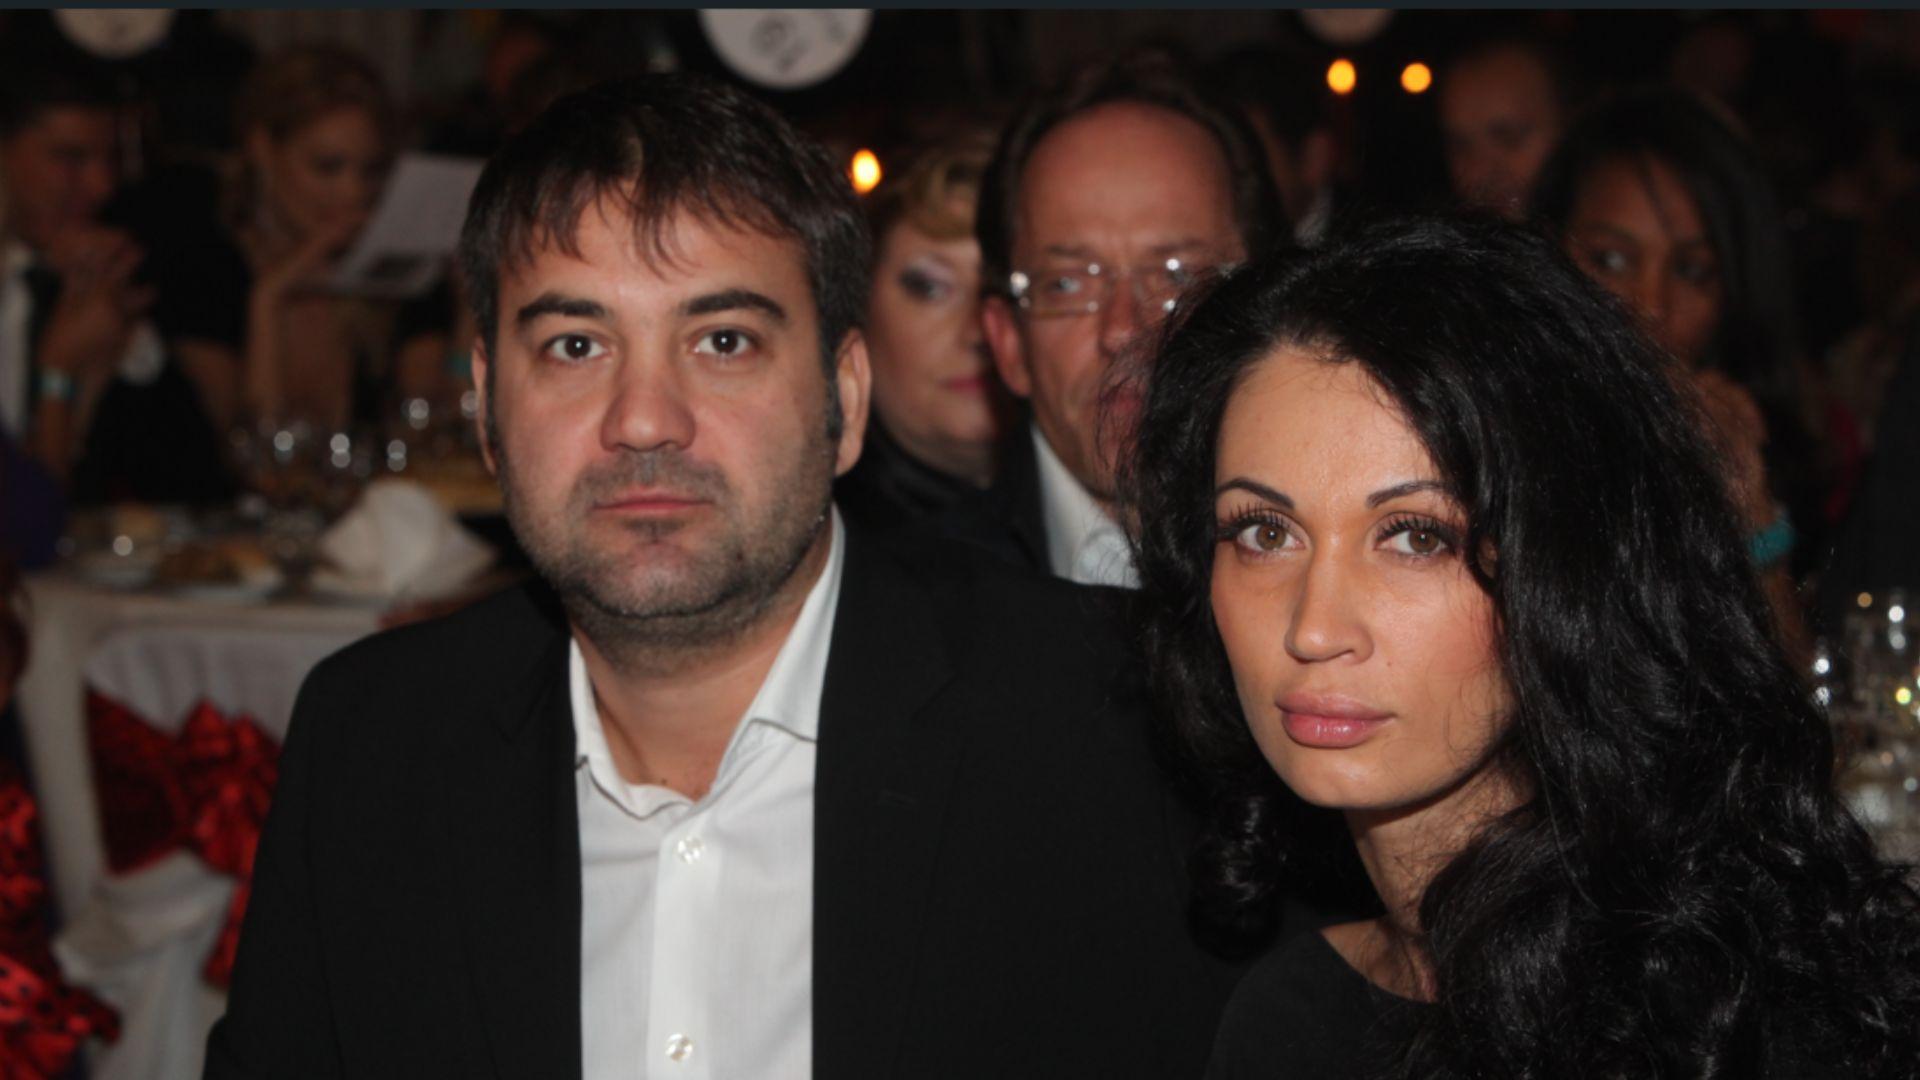 Prima reacție a lui Zsolt Csergo, soțul Nicoletei Luciu, după ce s-a zis că divorțează după 12 ani de căsnicie: Ne afectează|EpicNews